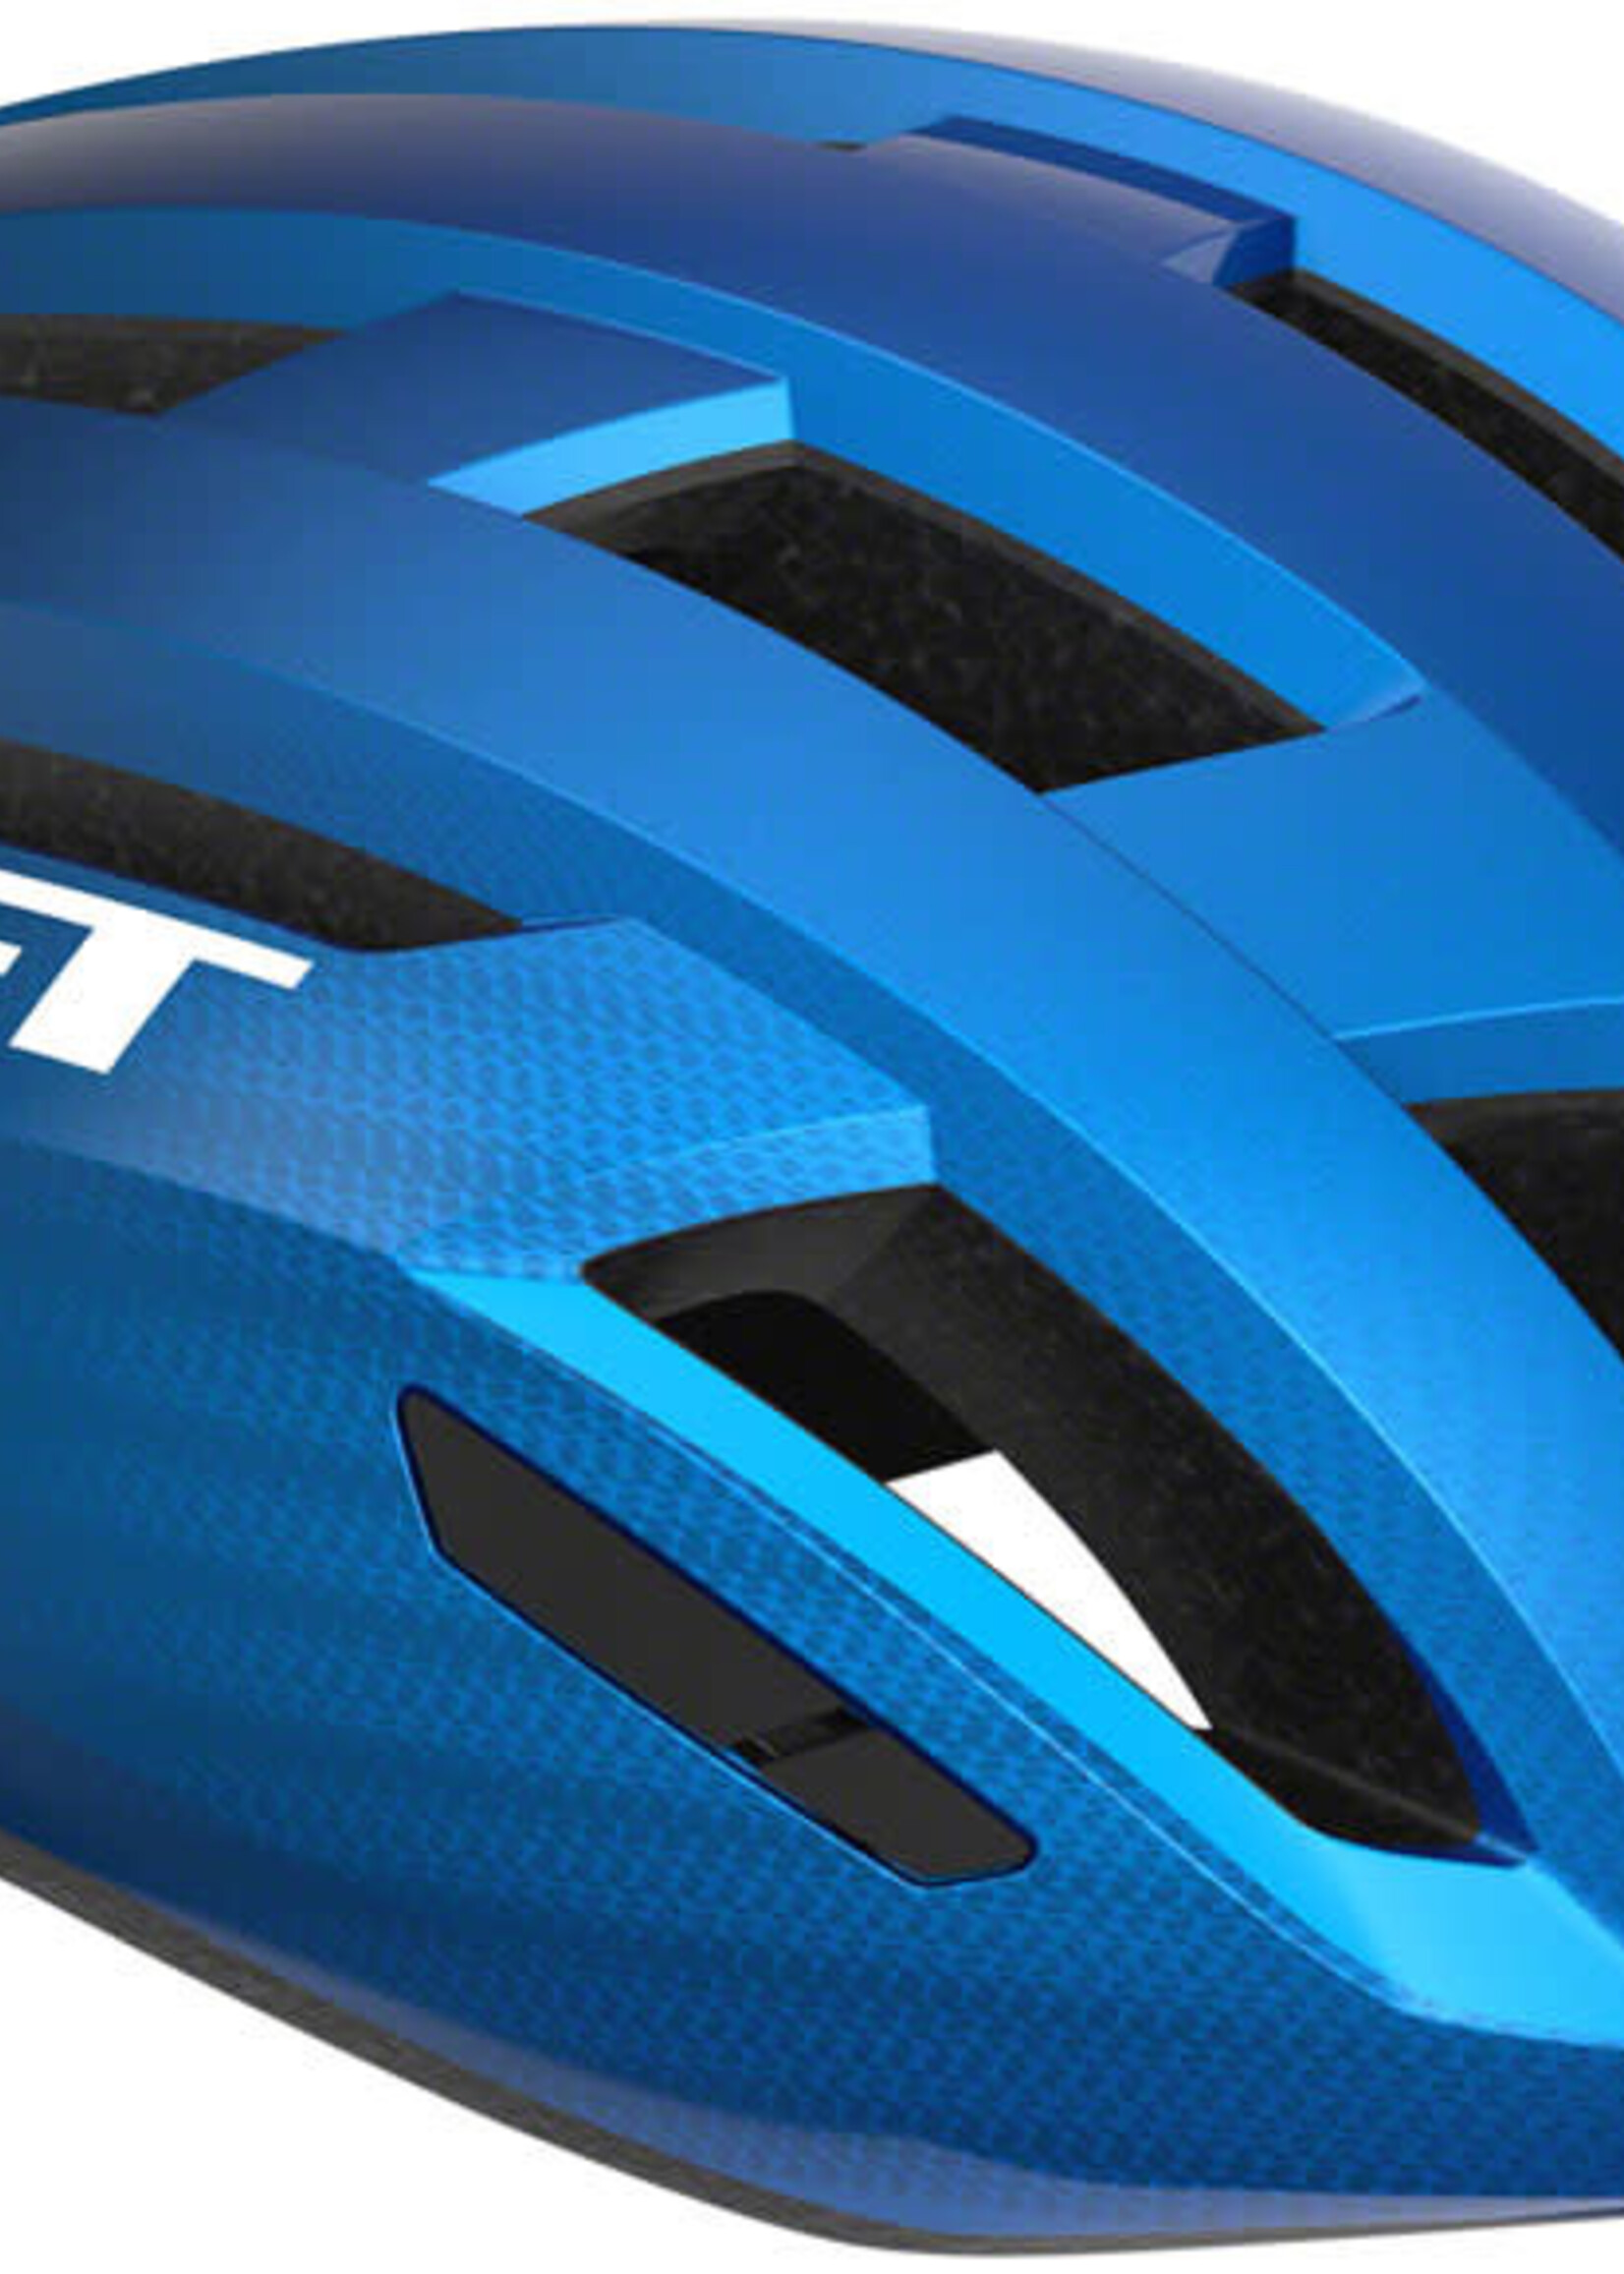 MET Helmets MET Vinci MIPS Helmet - Blue Metallic Glossy Small